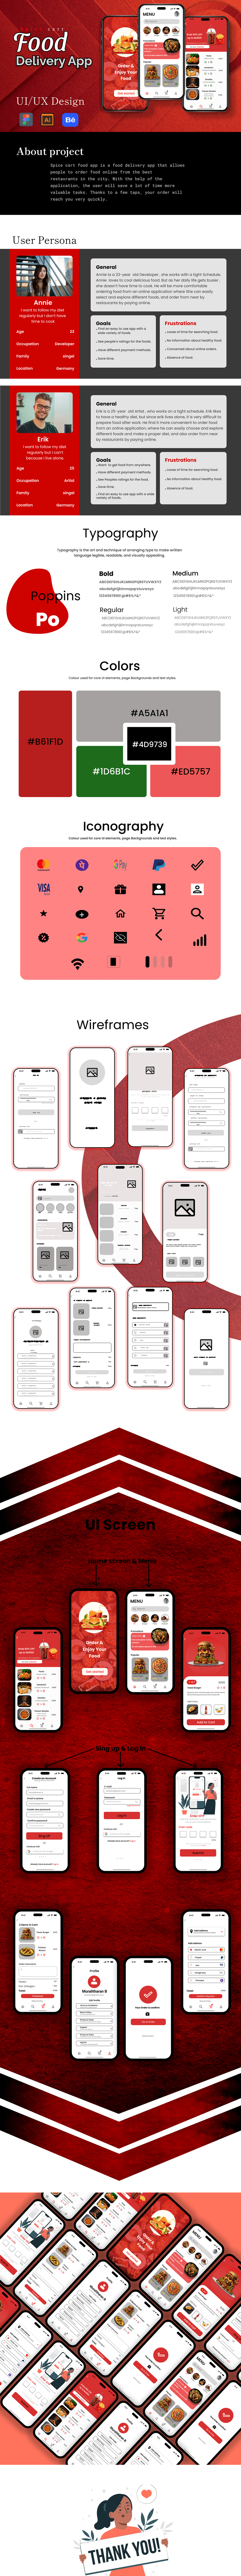 UI/UX ui design Mobile app